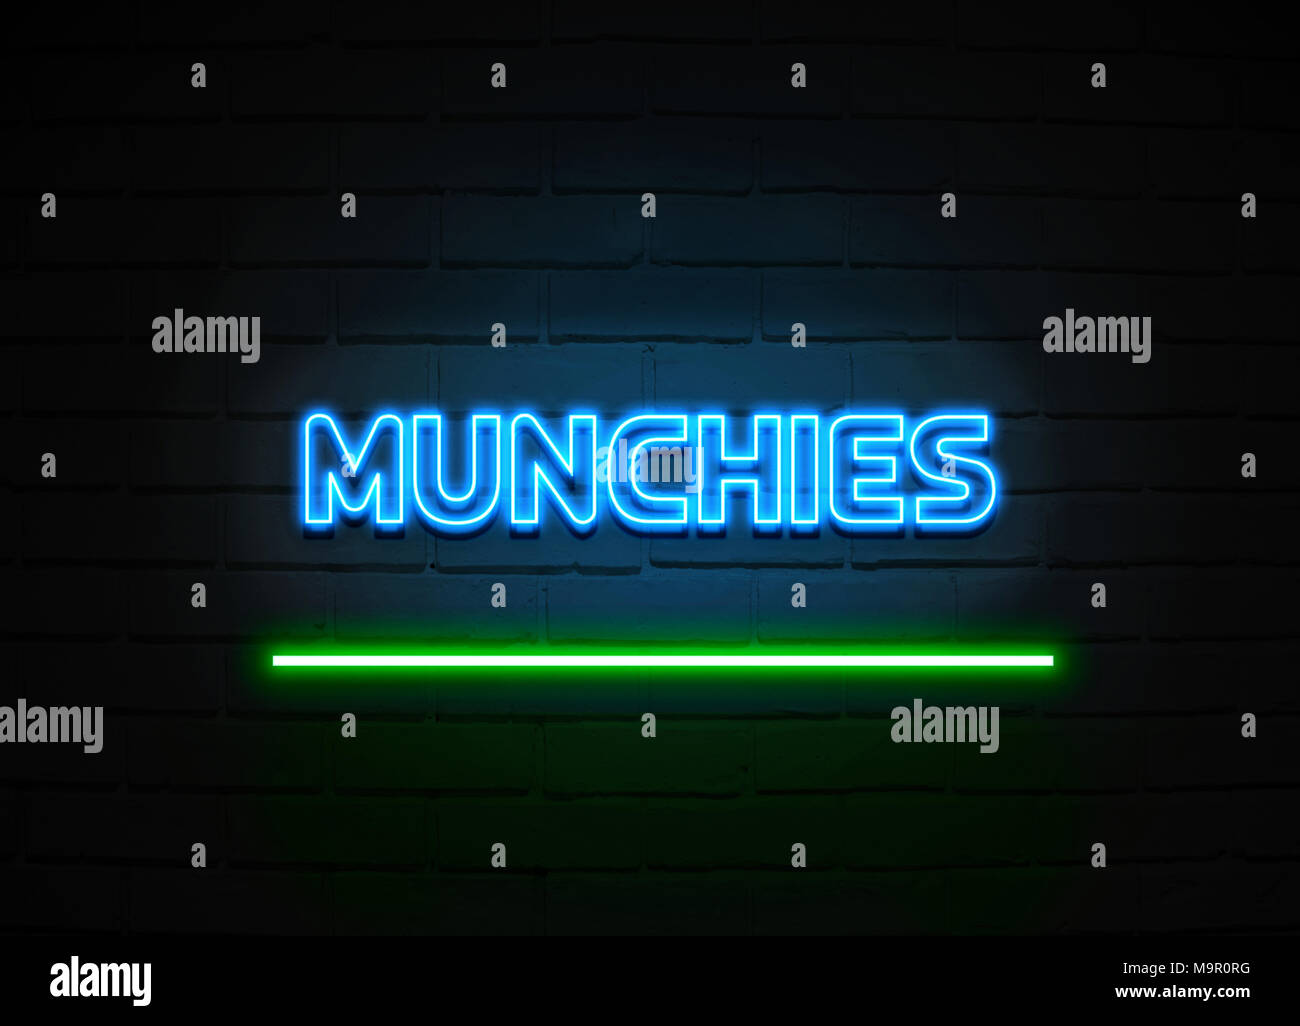 Munchies Leuchtreklame - glühende Leuchtreklame auf brickwall Wand - 3D-Royalty Free Stock Illustration dargestellt. Stockfoto